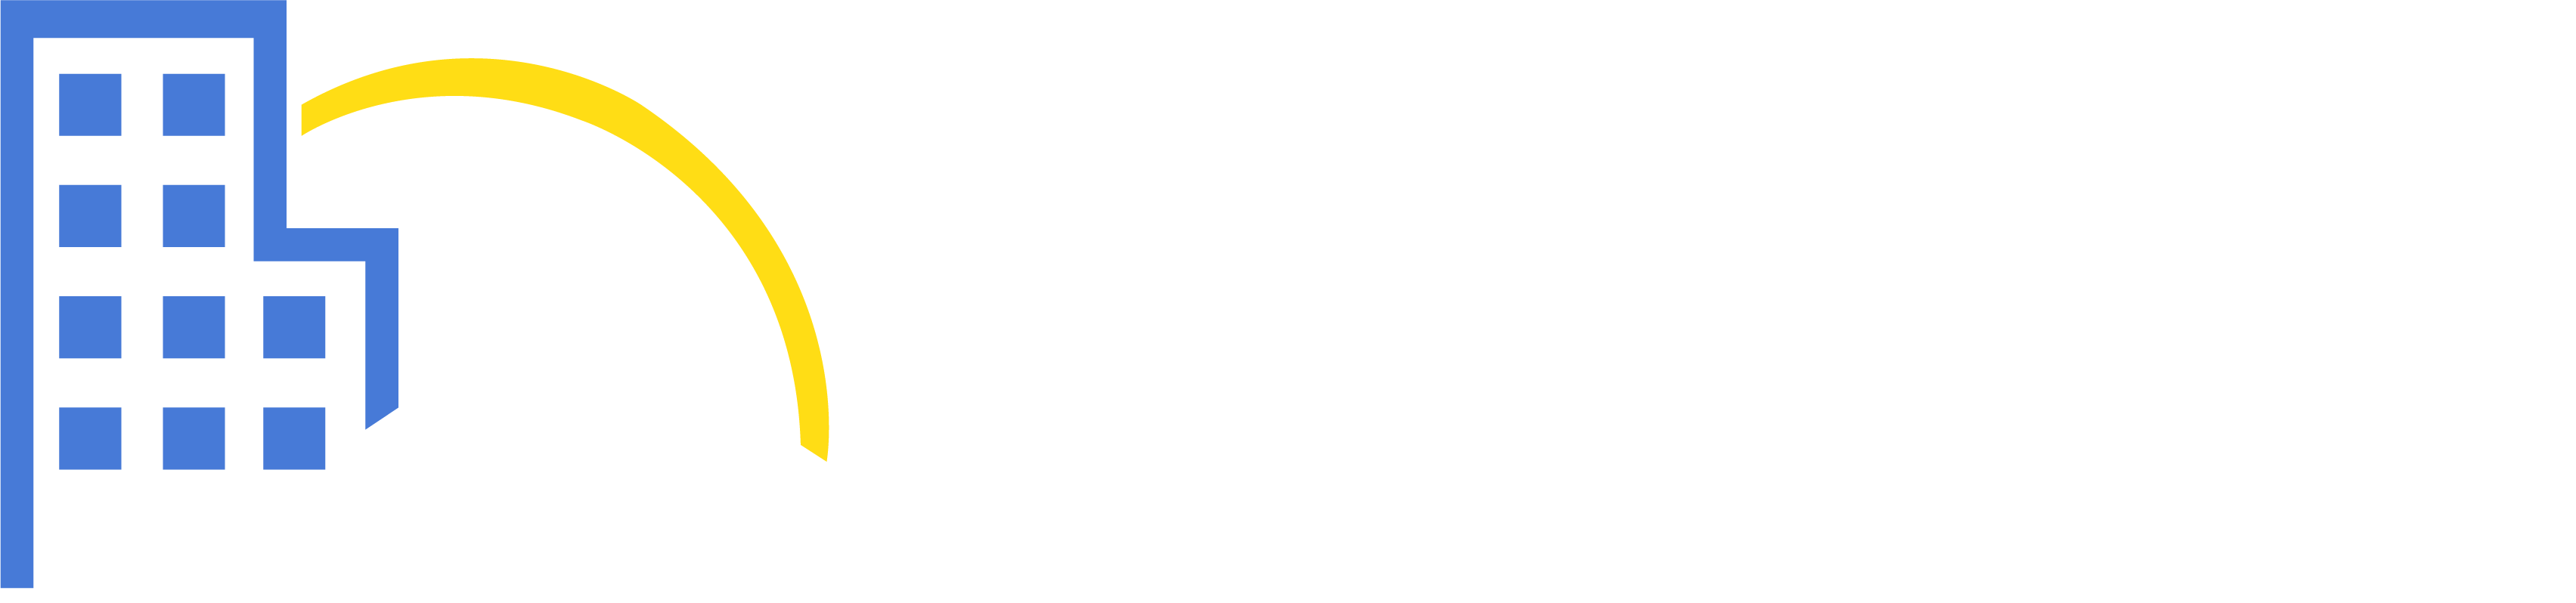 Senior Care Referral Services